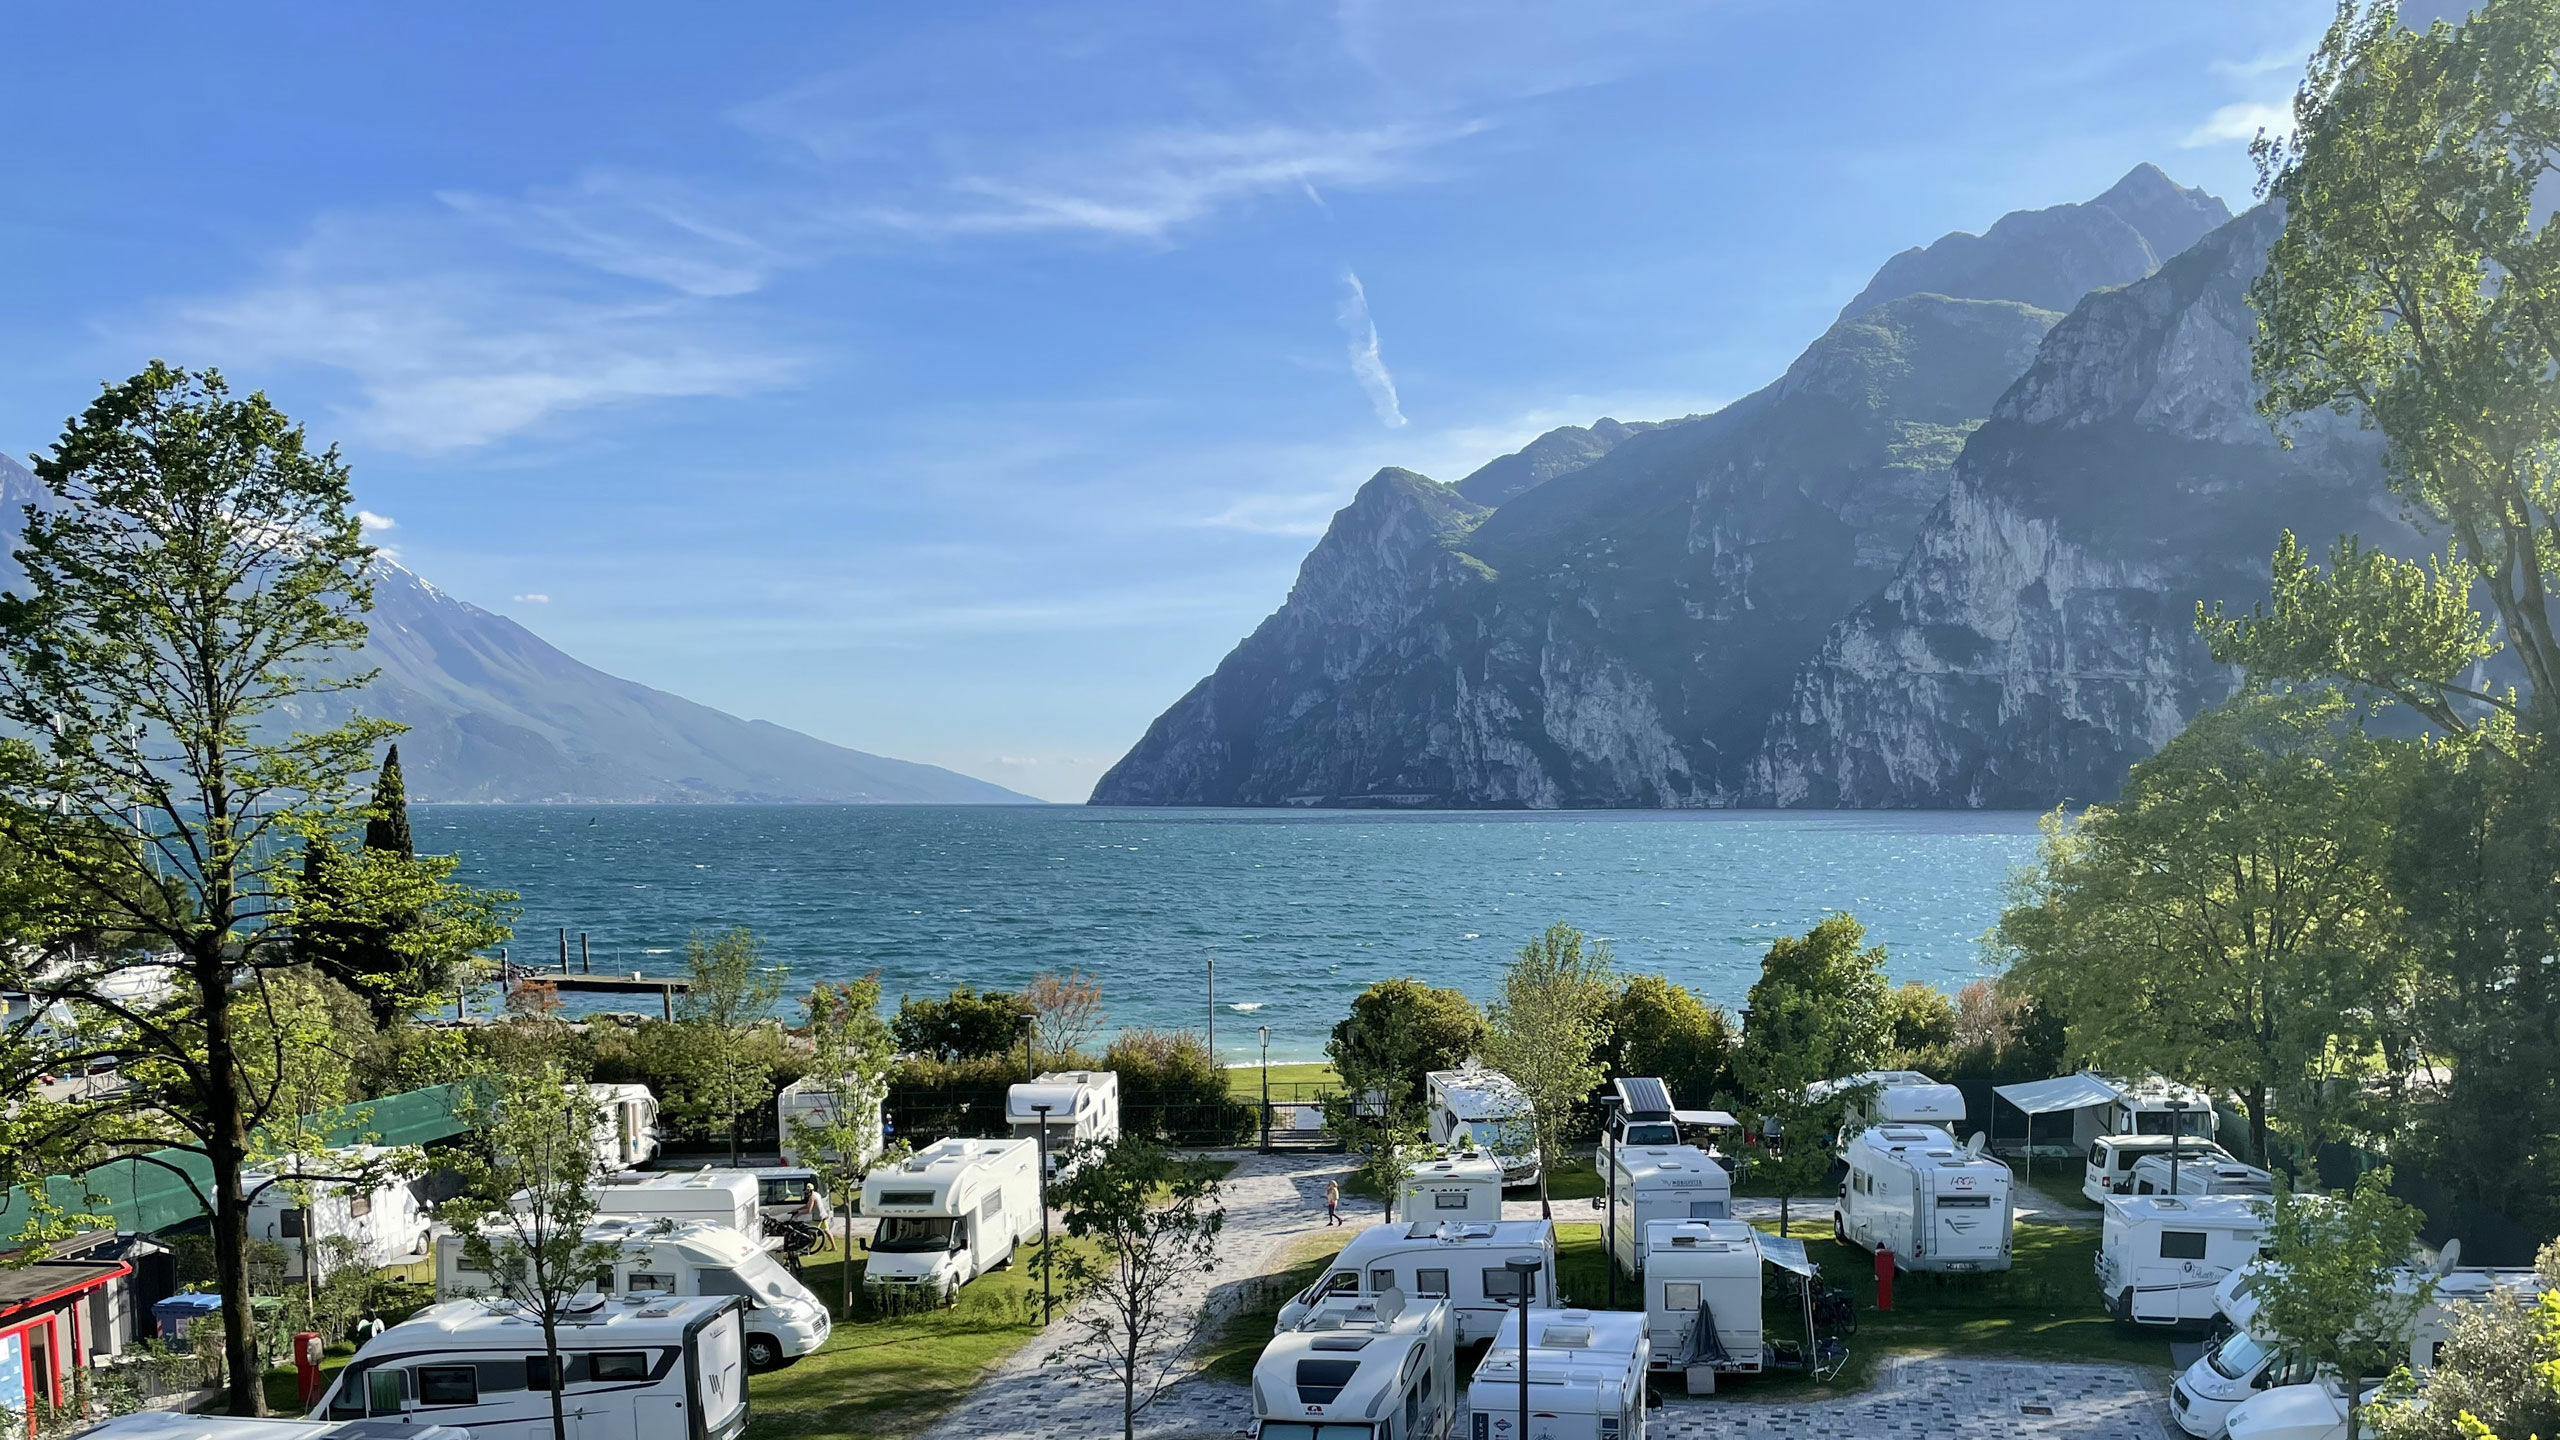 Camping al Lago - Camping is more - Direttamente sul lago di Garda